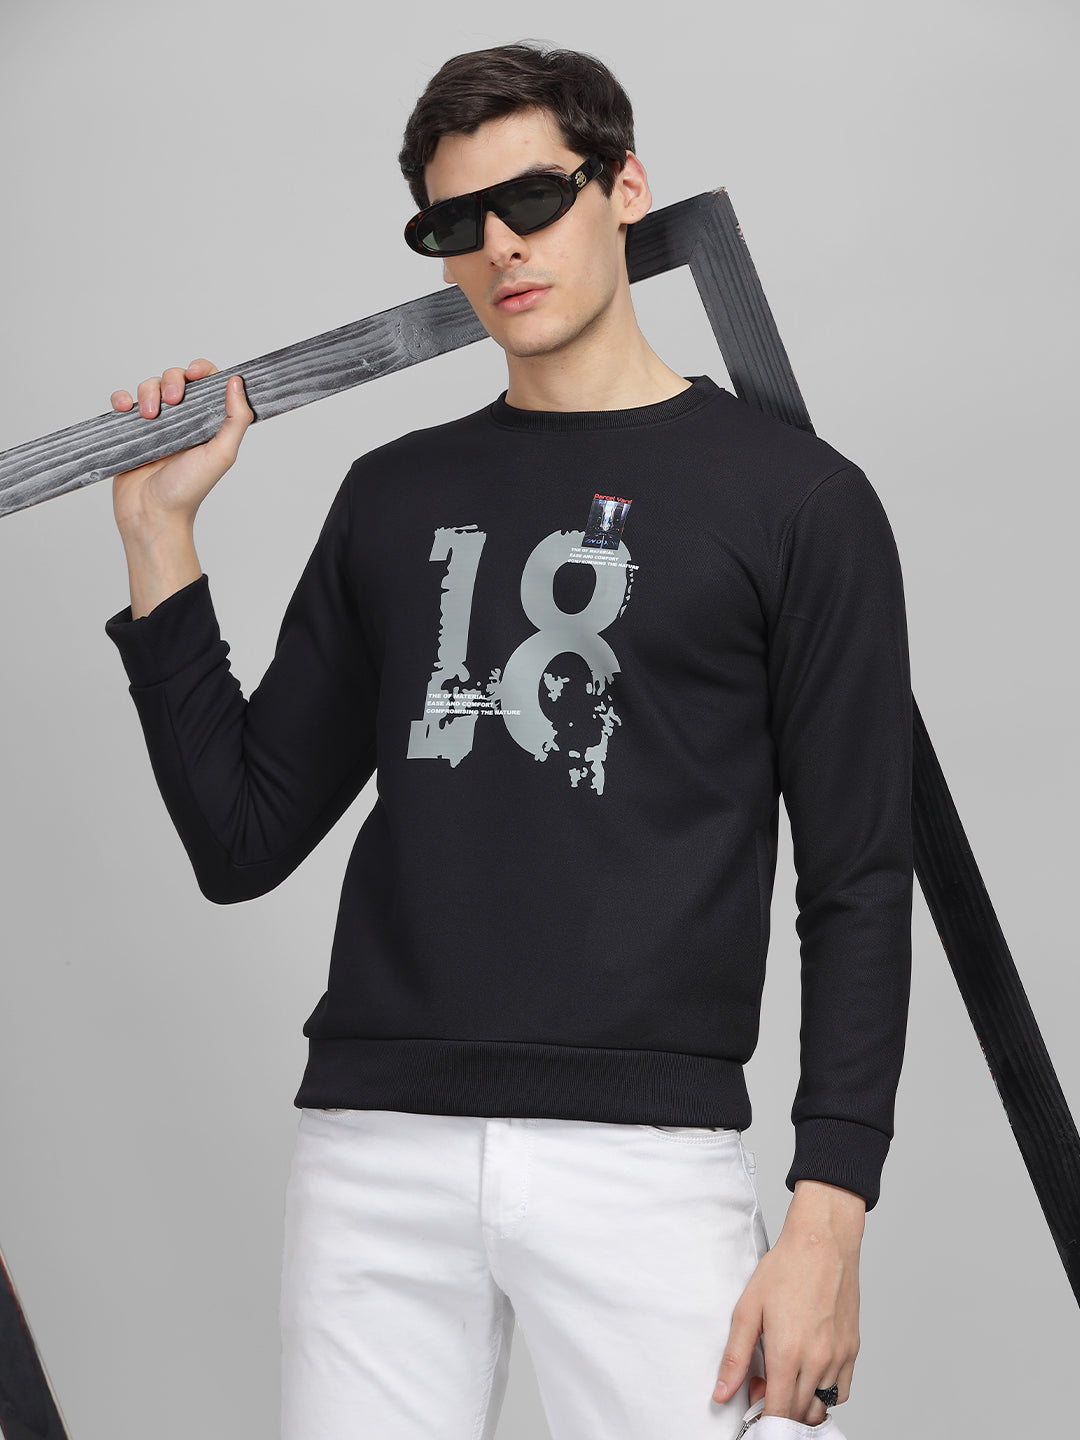 Men's Black Printed Round Neck Sweatshirt